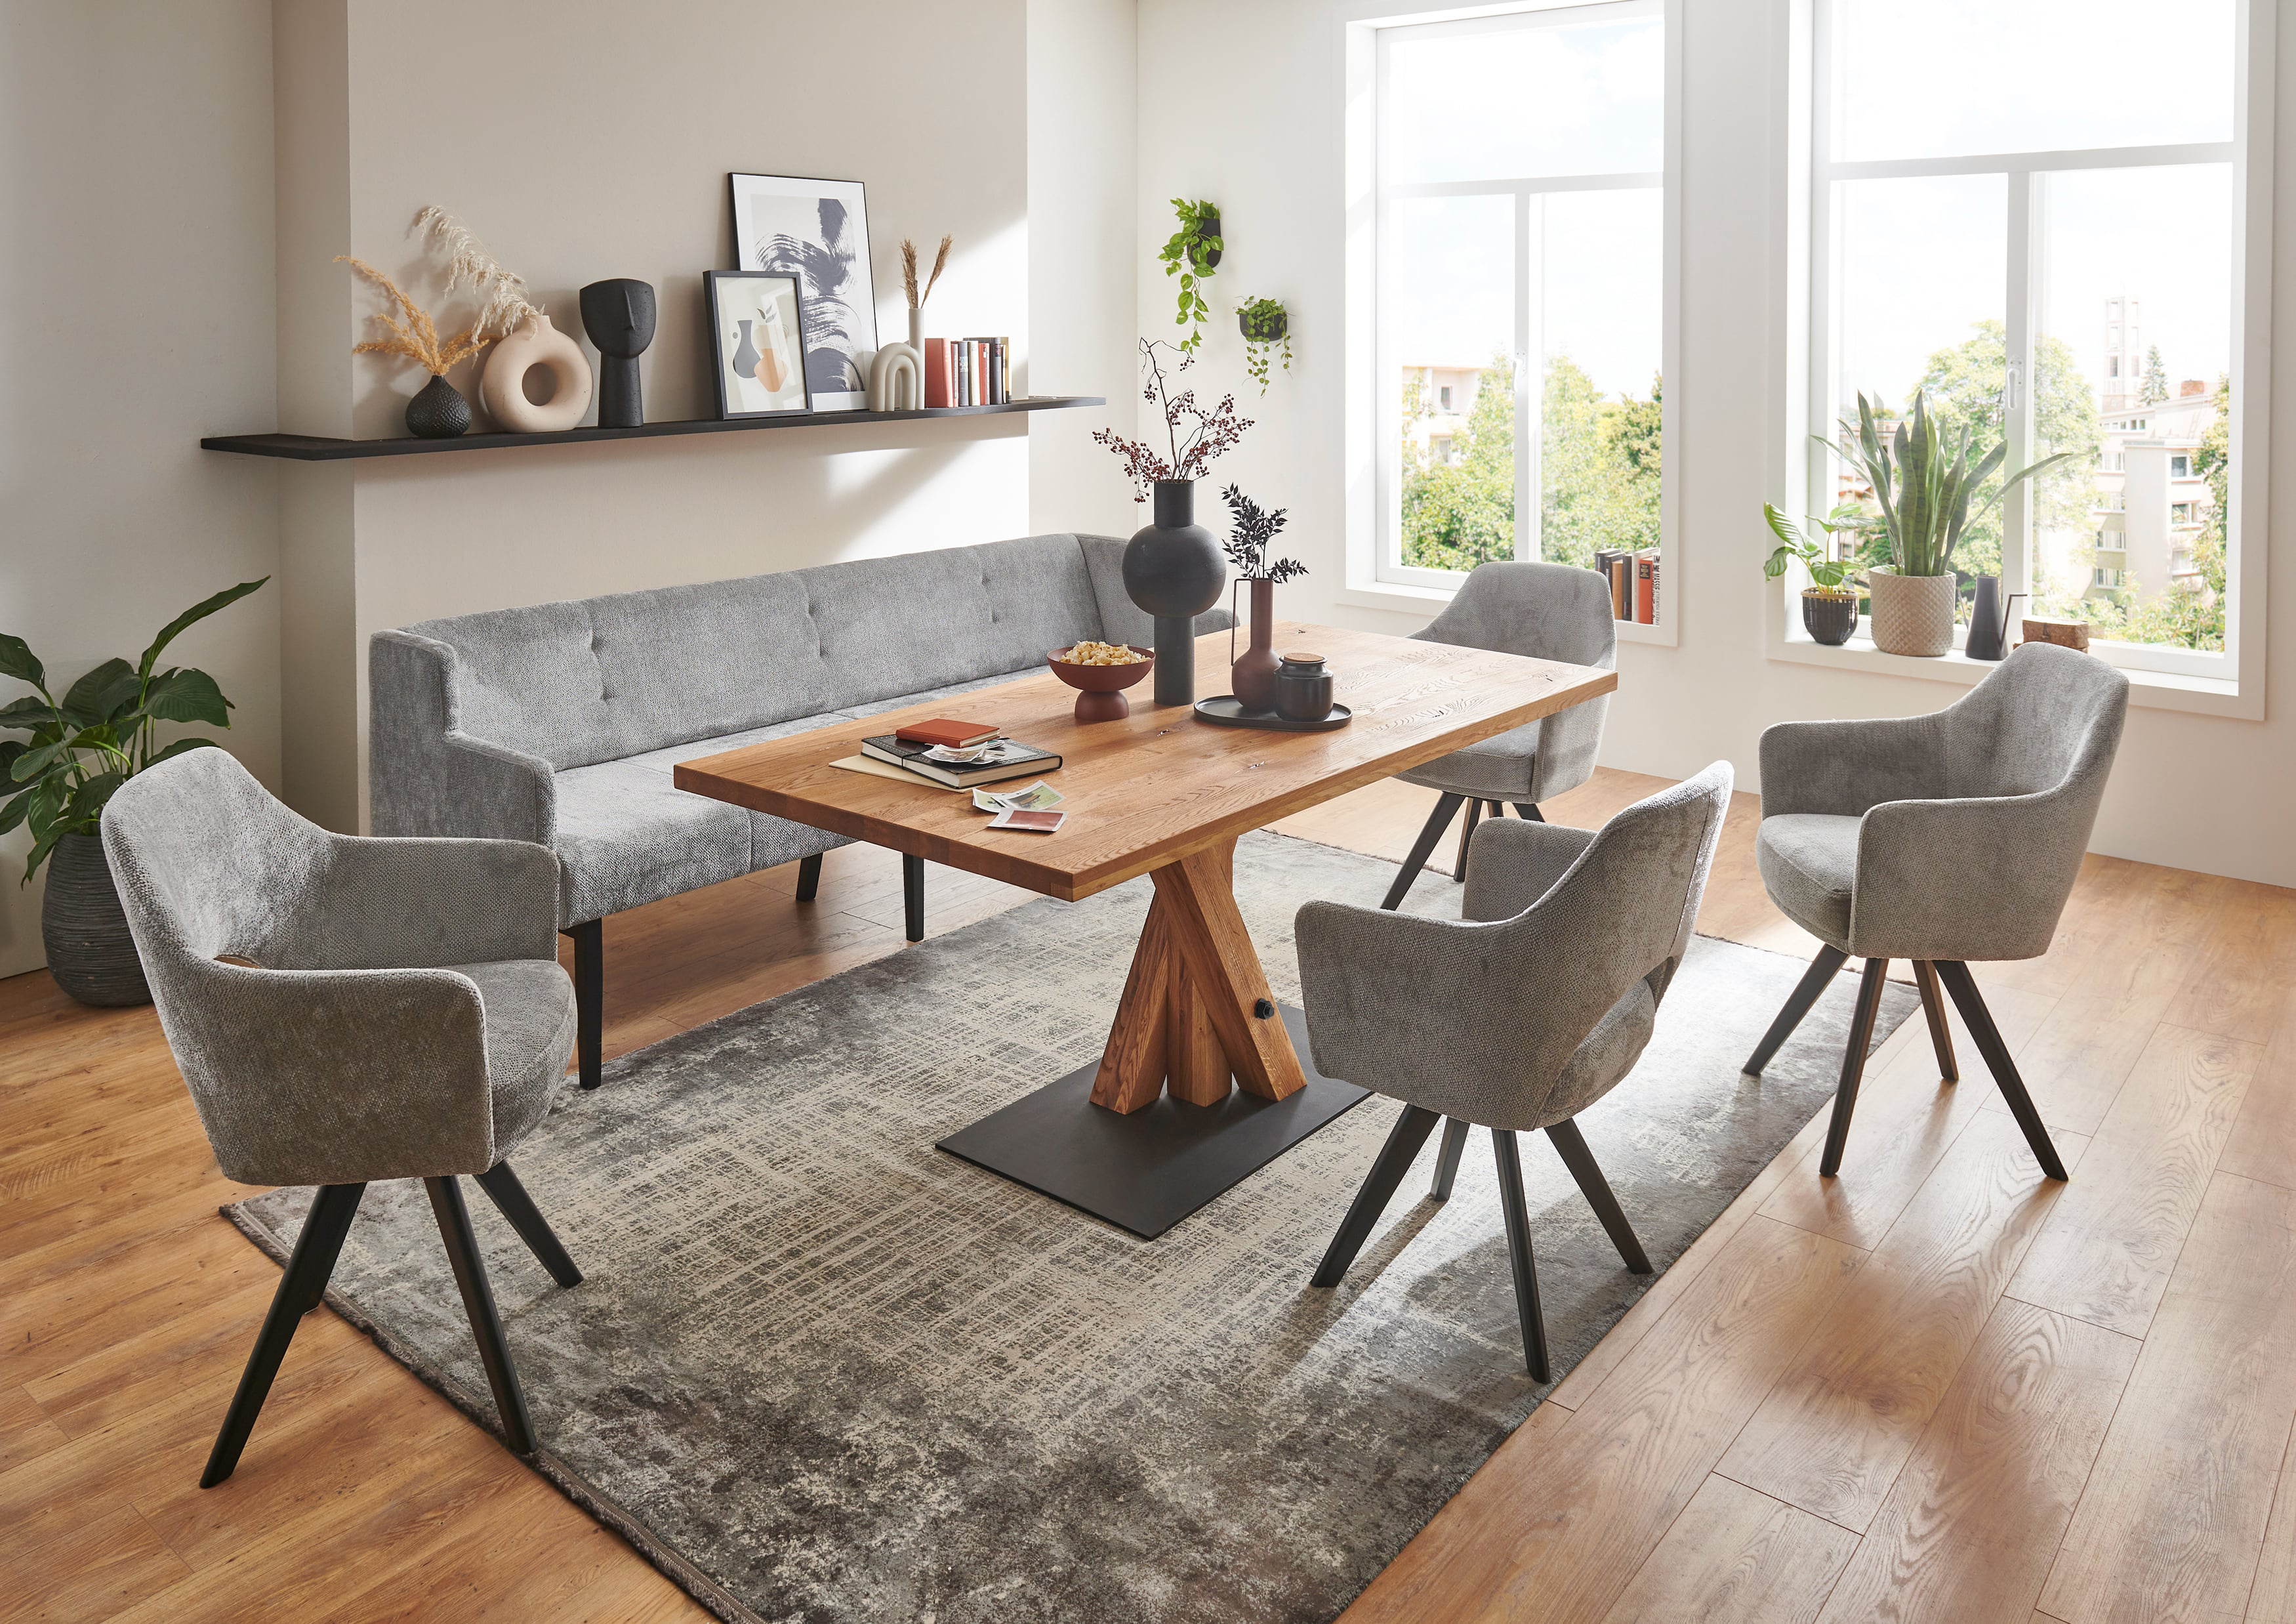 Standard Furniture Tischgruppe eiche mit Tisch Messina, Drehstühlen Getafe und Polsterbank Bilbao